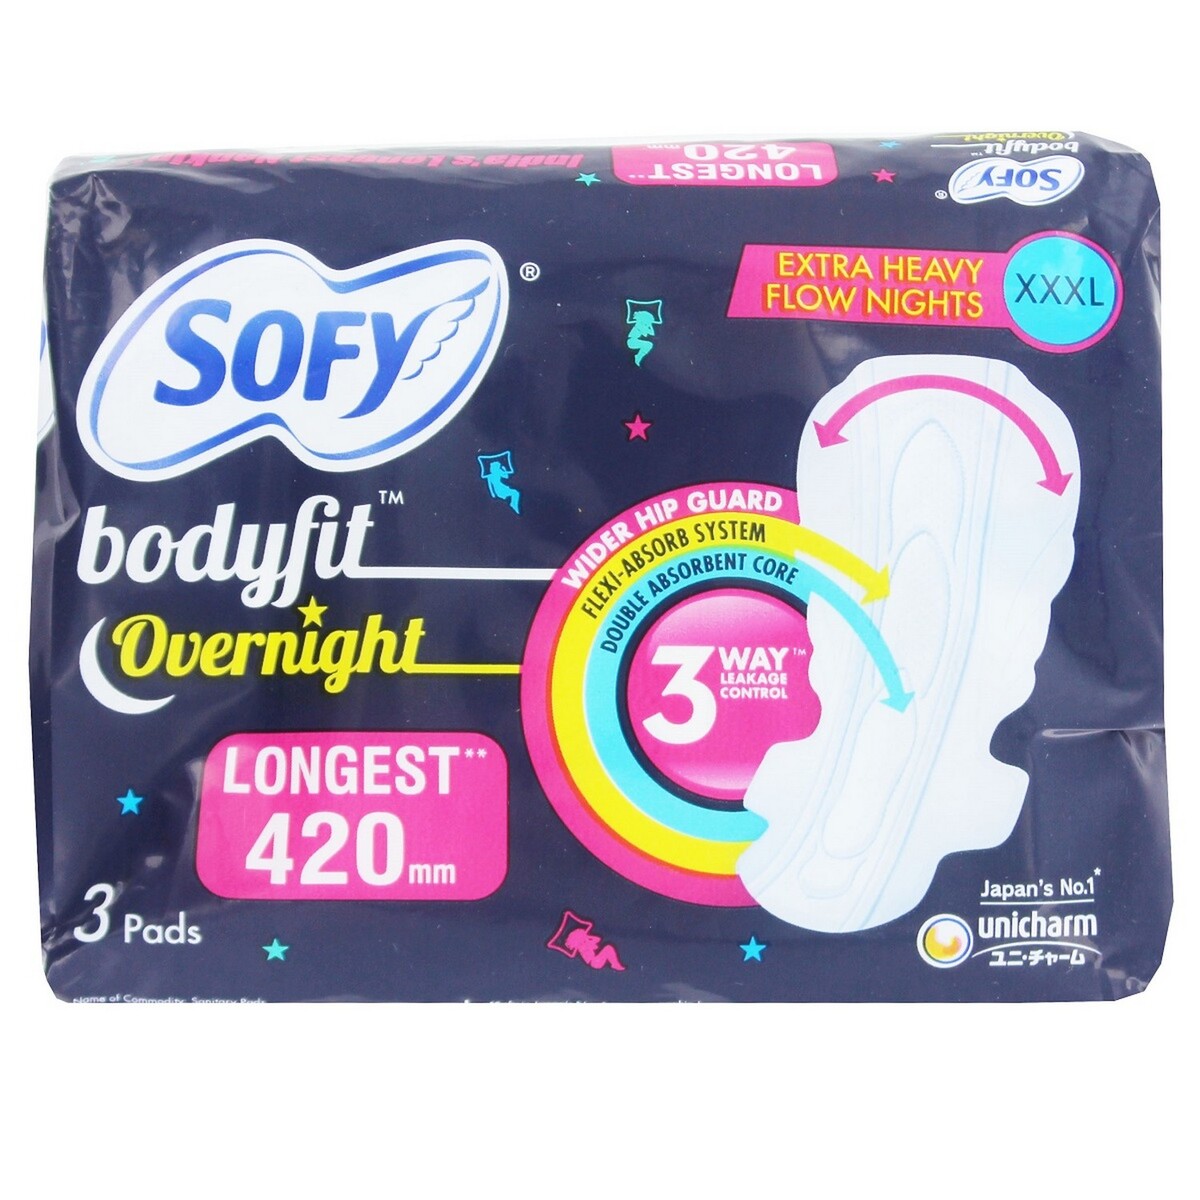 Sofy Bodyfit Overnight XXXL 3's